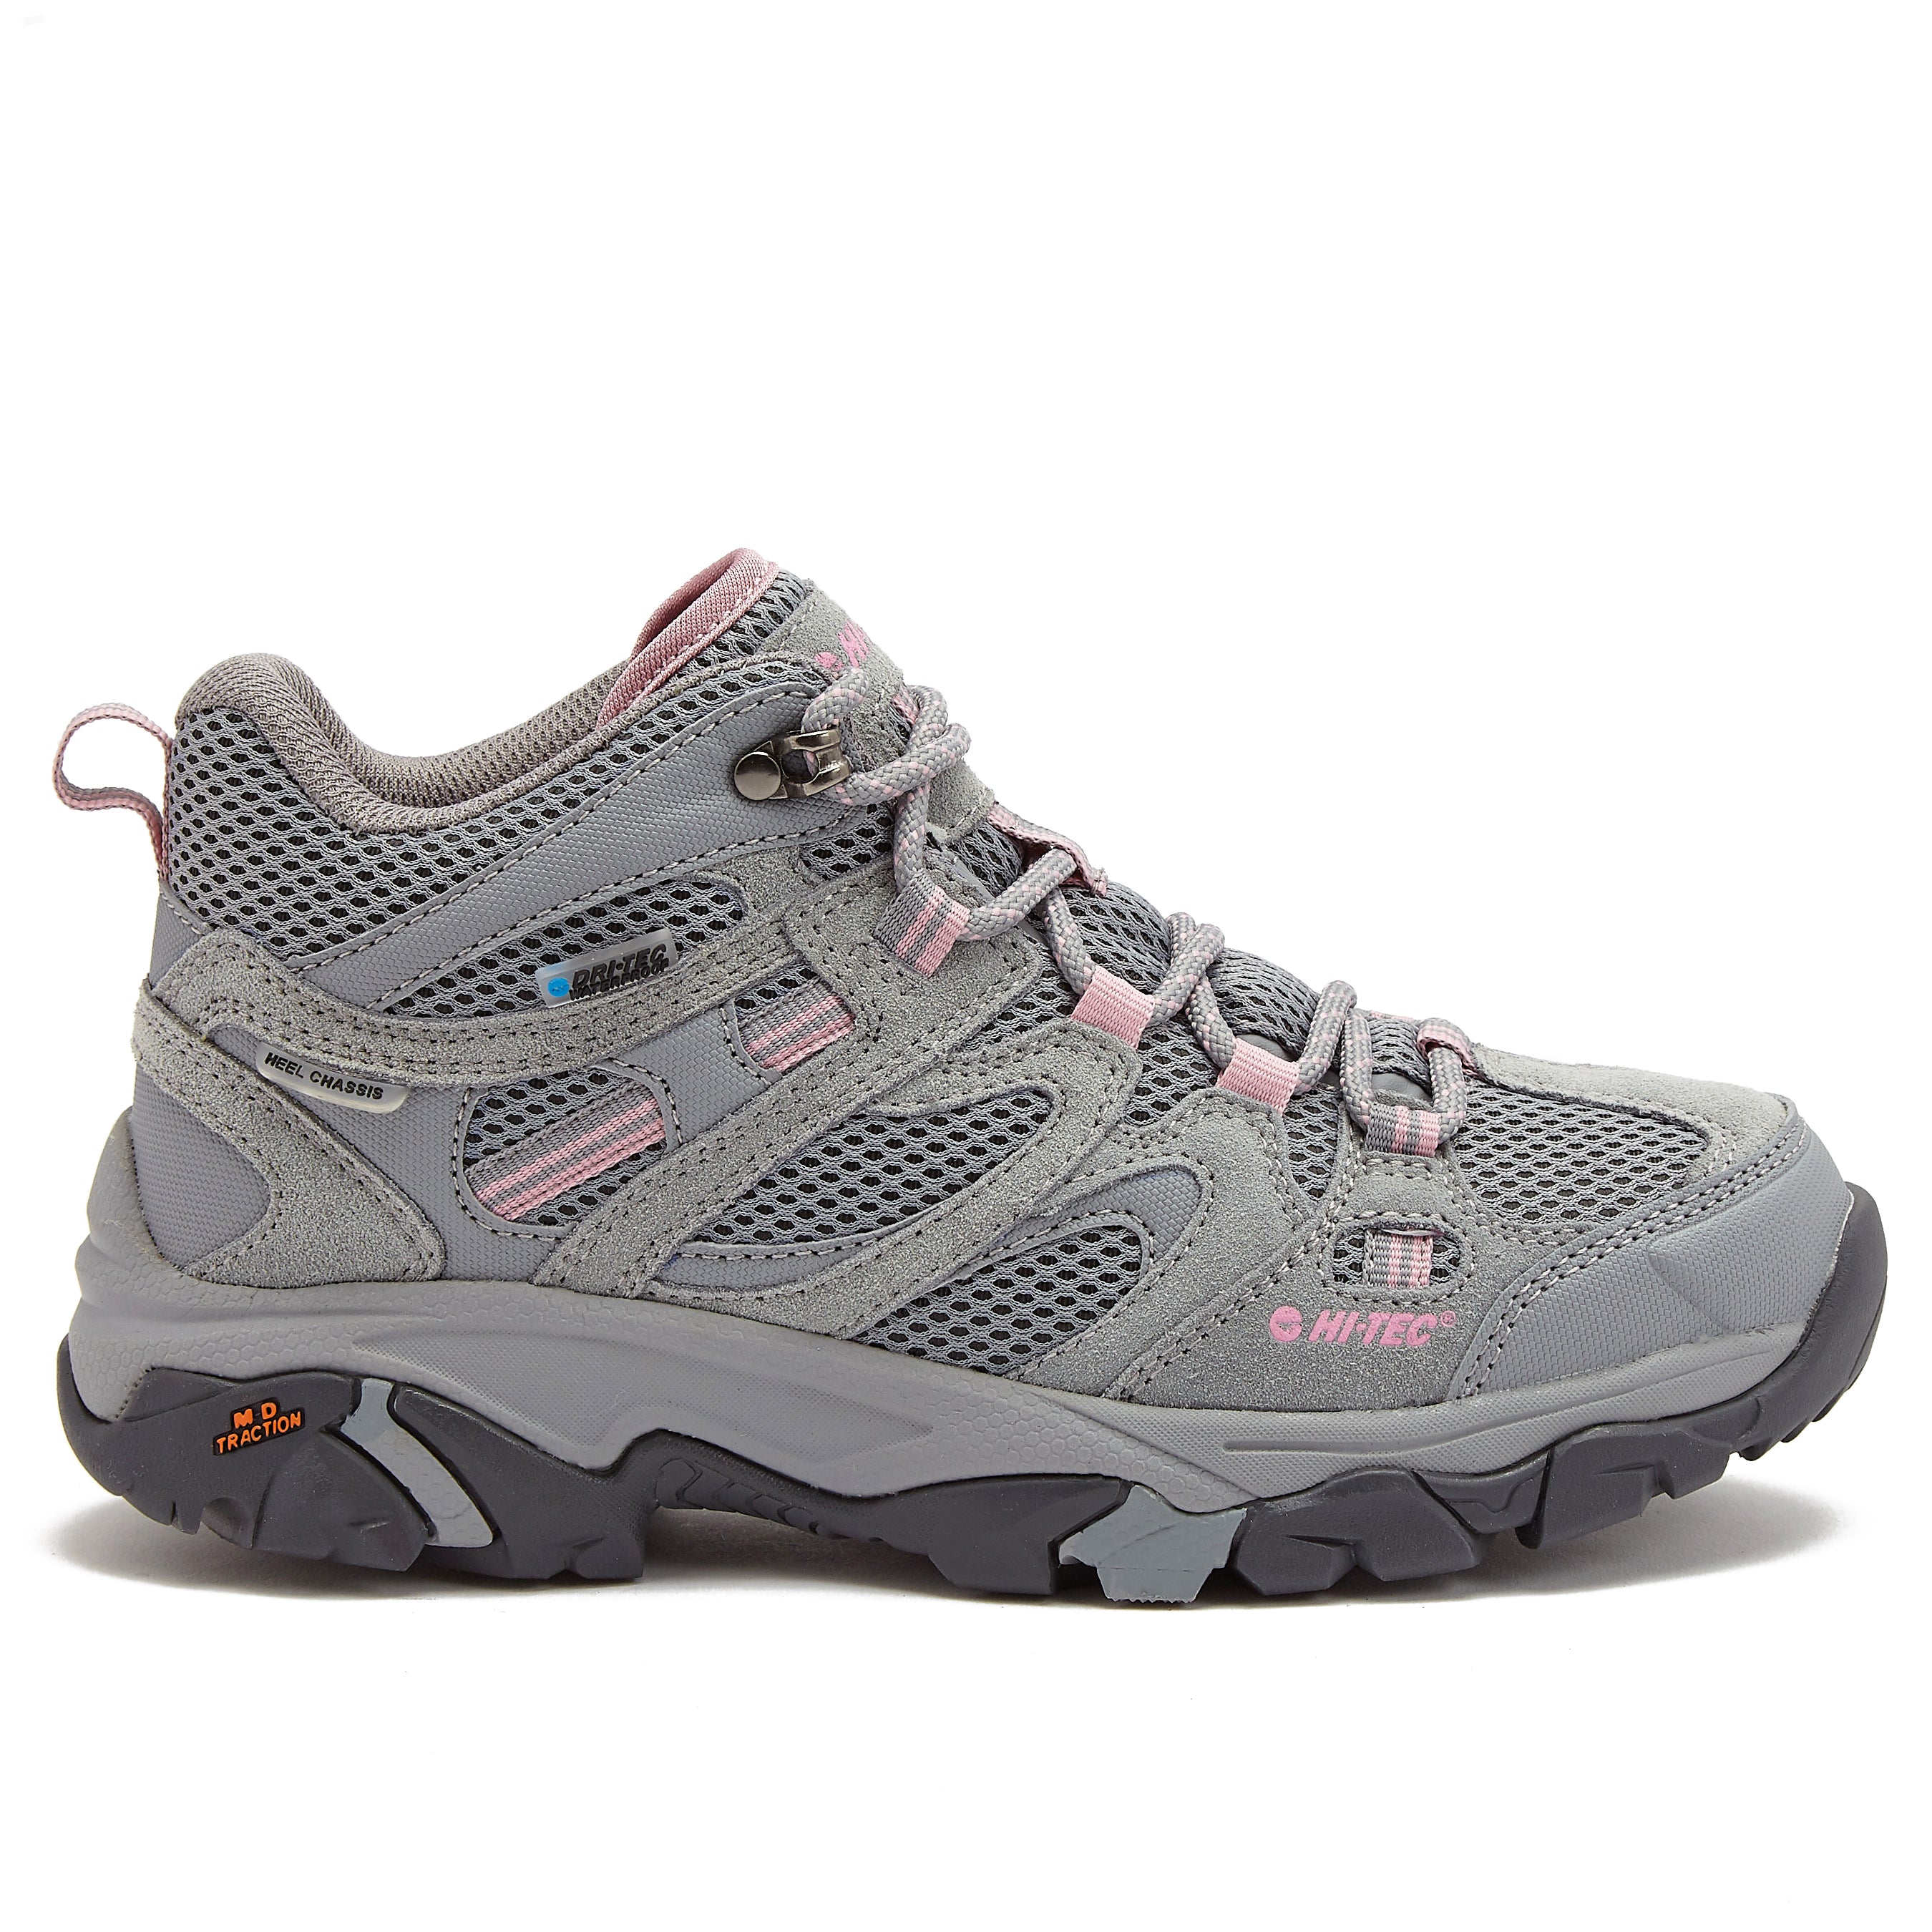 HI-TEC Apex Mid Waterproof Hiking Boots for | Womens Hiking Boots – Hi -Tec.com